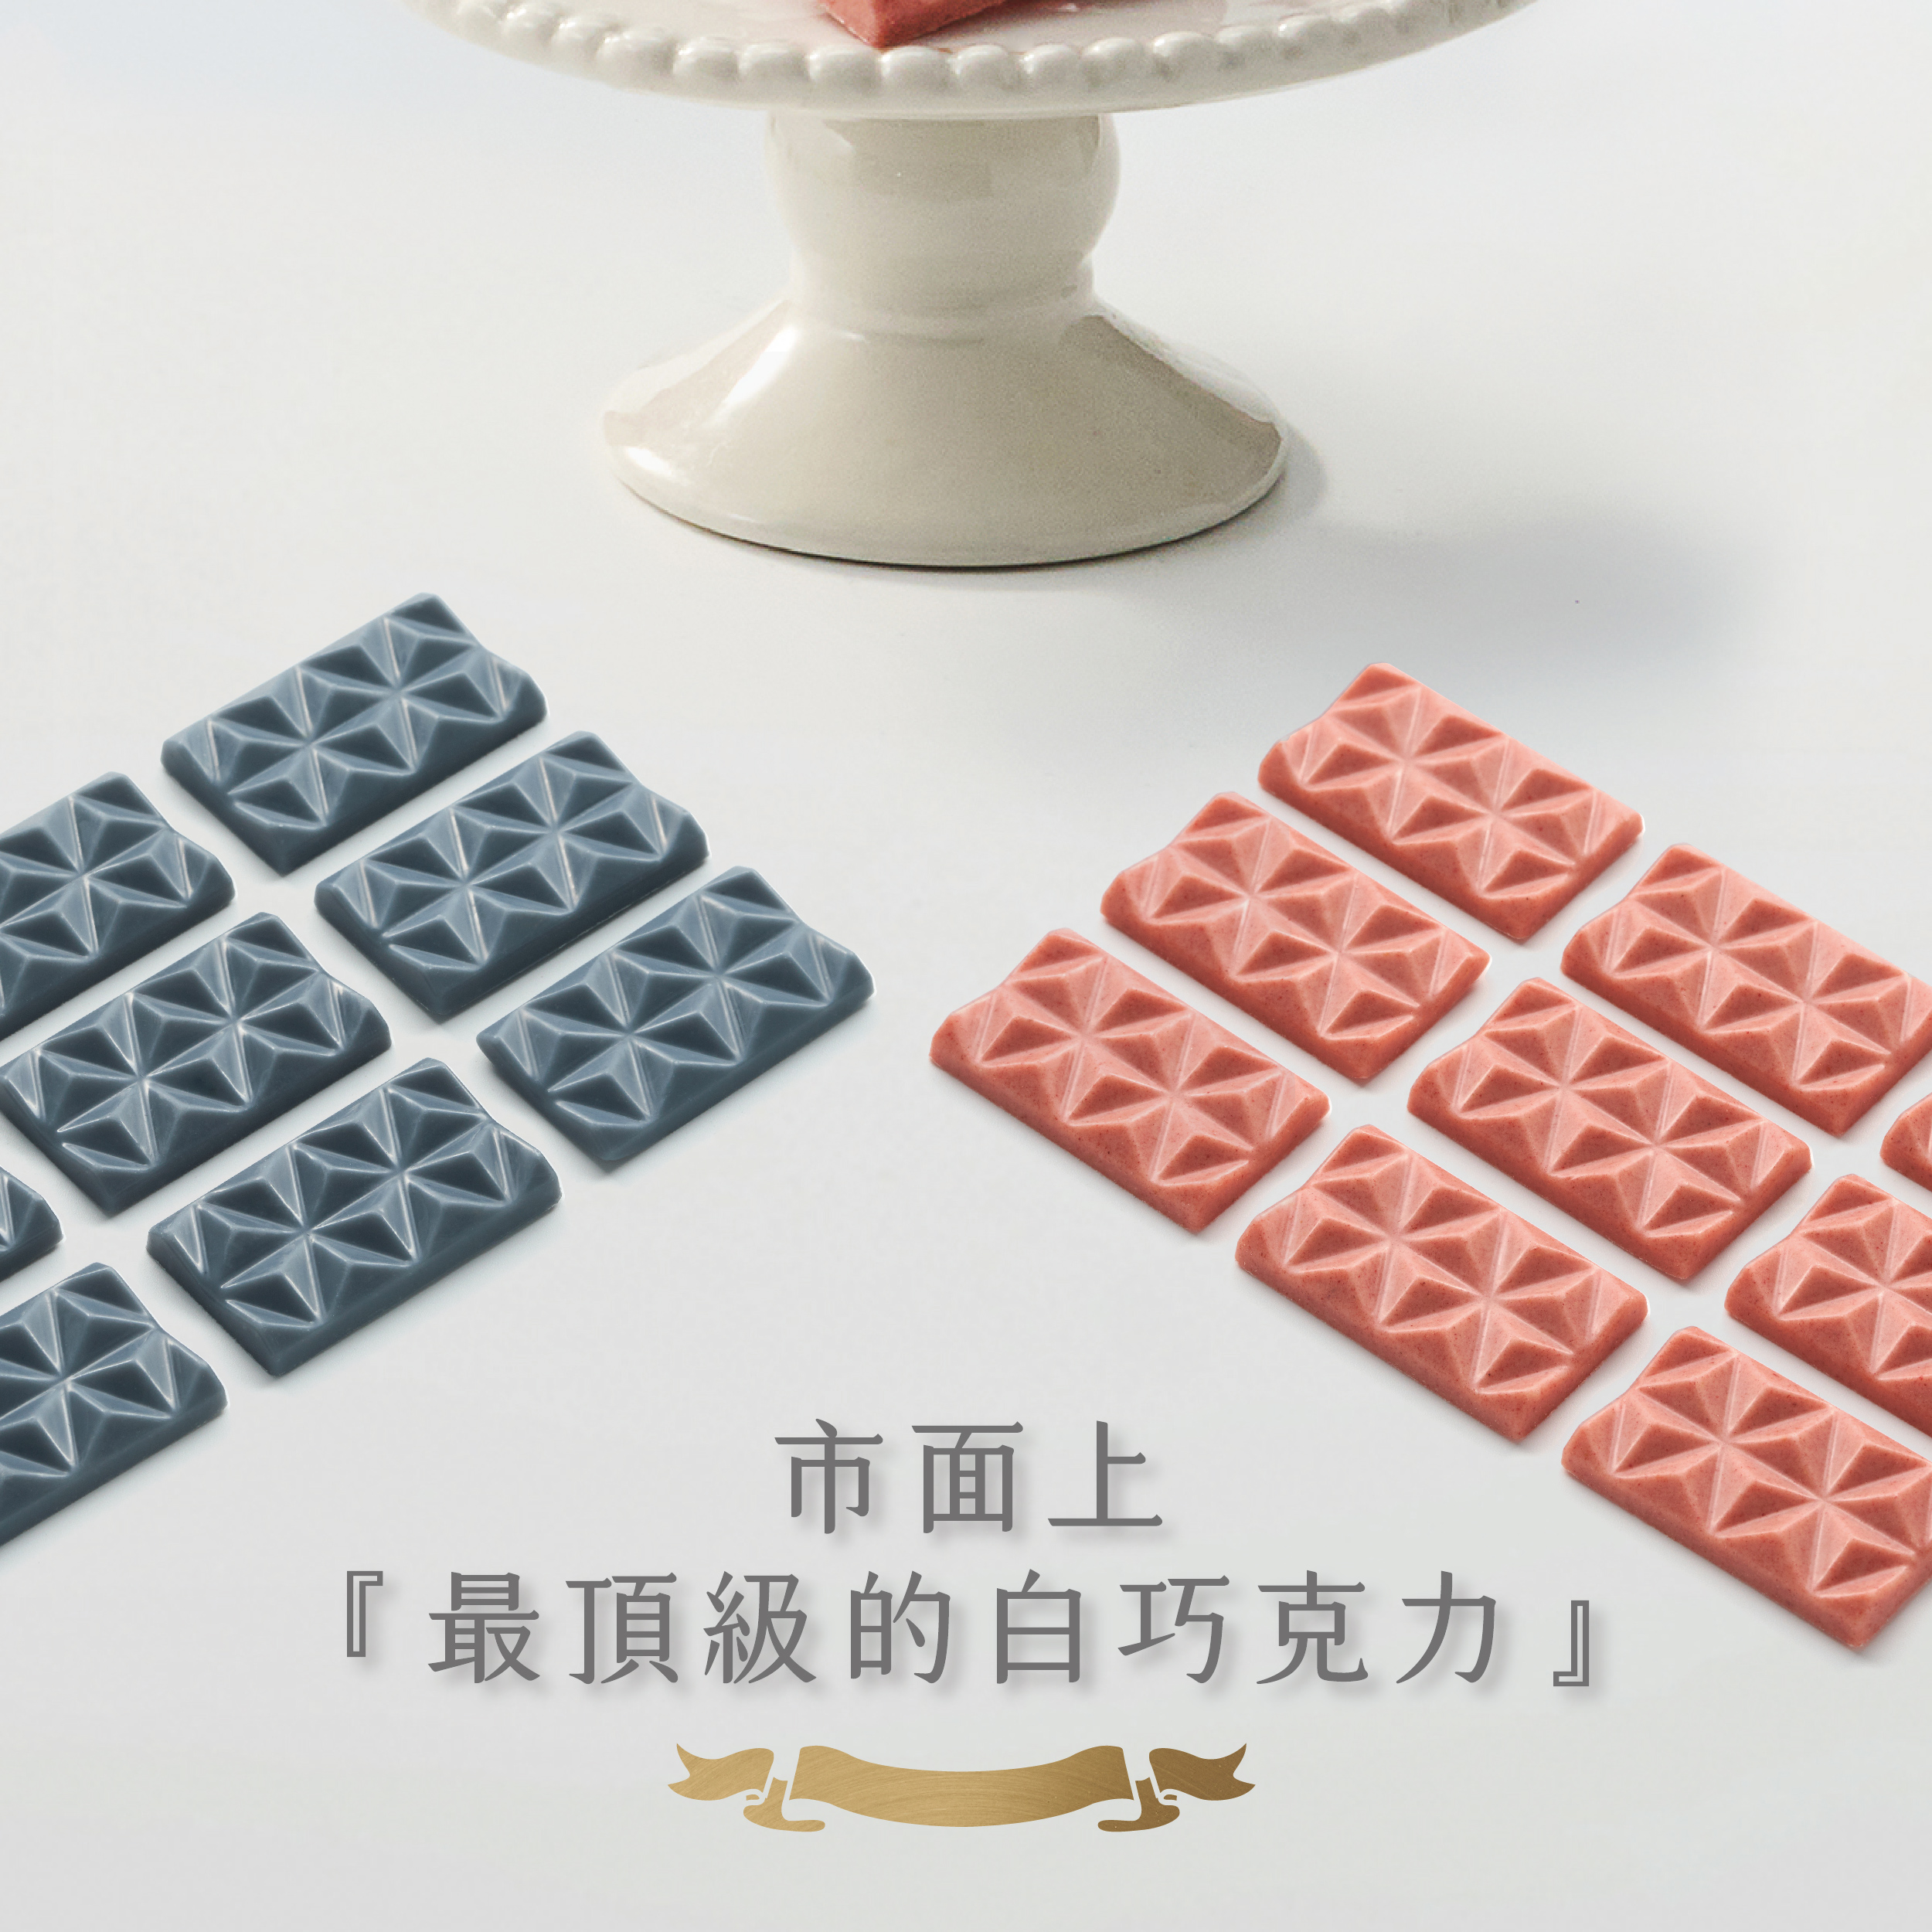 【高纖無糖】404 Oligo 幸福祈願益生元白巧克力-香蕉 x1盒